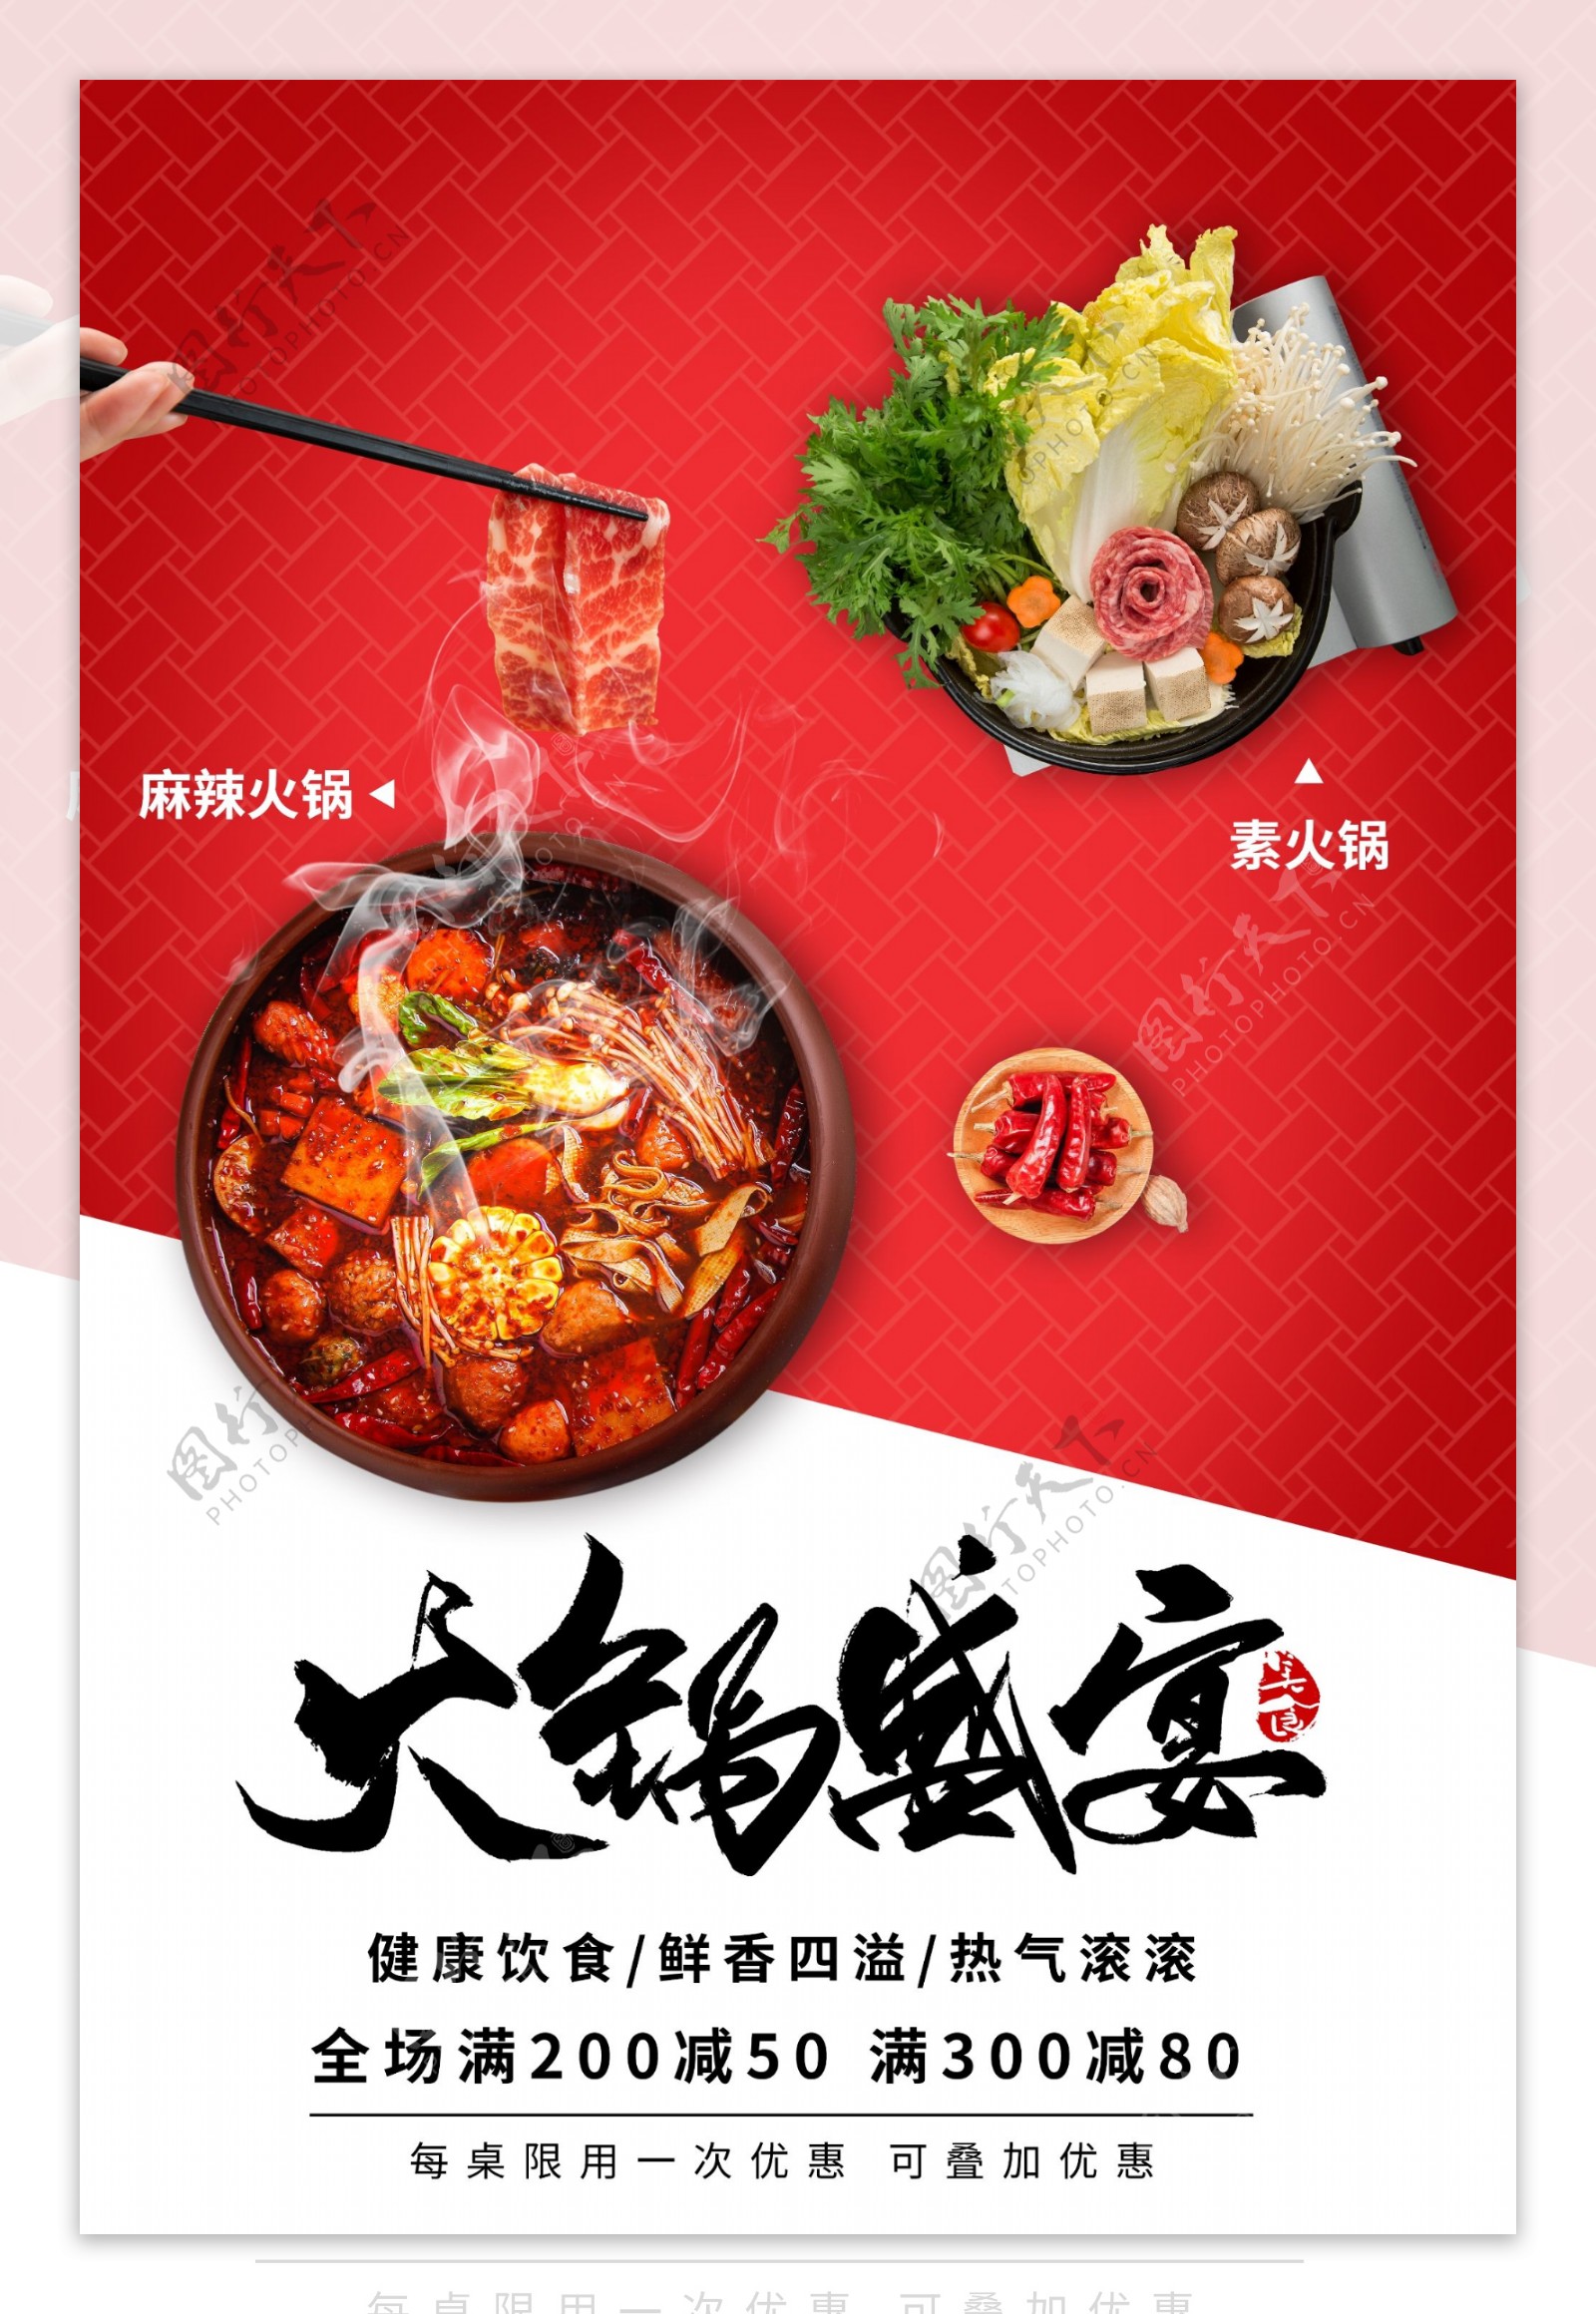 火锅盛宴美食宣传活动海报素材